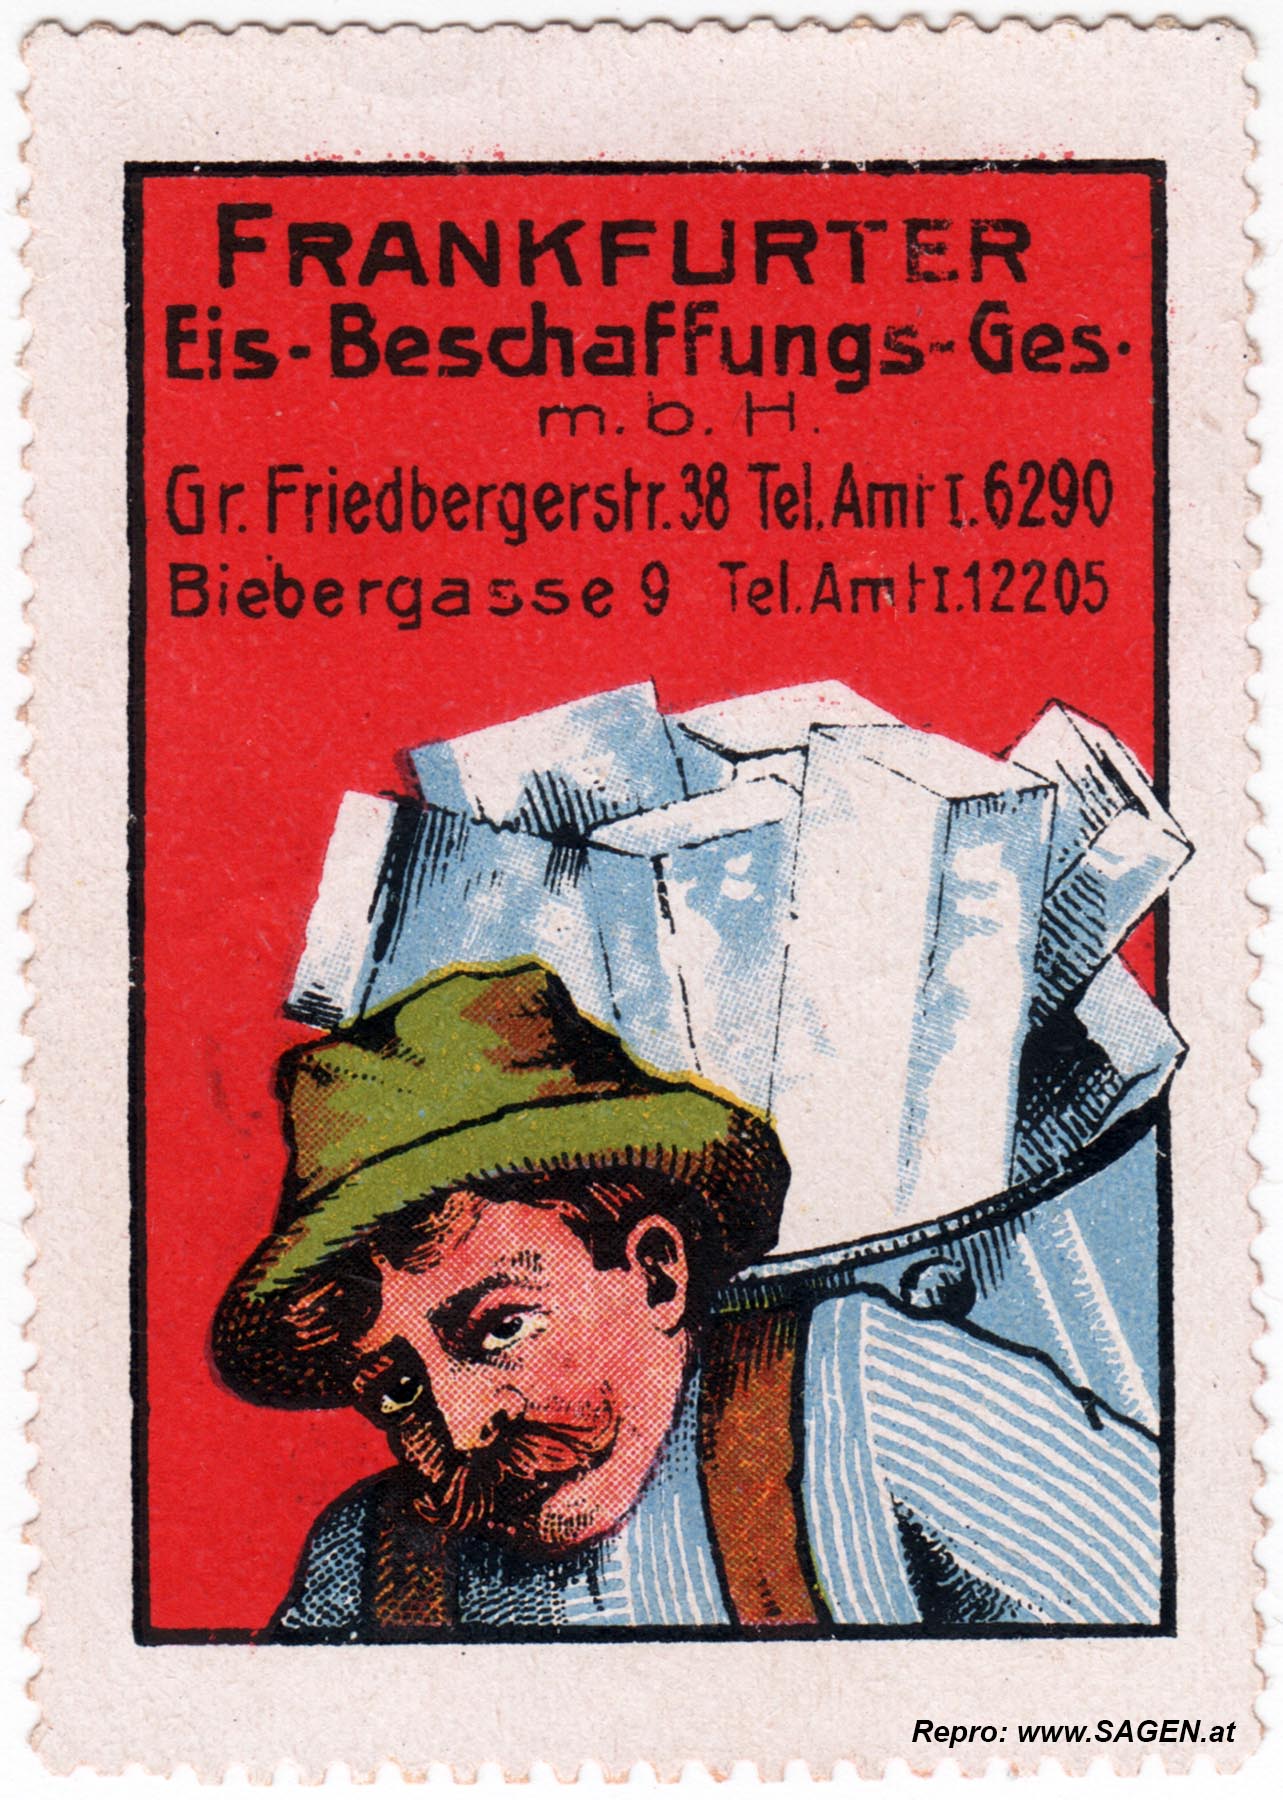 Reklamemarke Frankfurter Eis-Beschaffungs-GesmbH